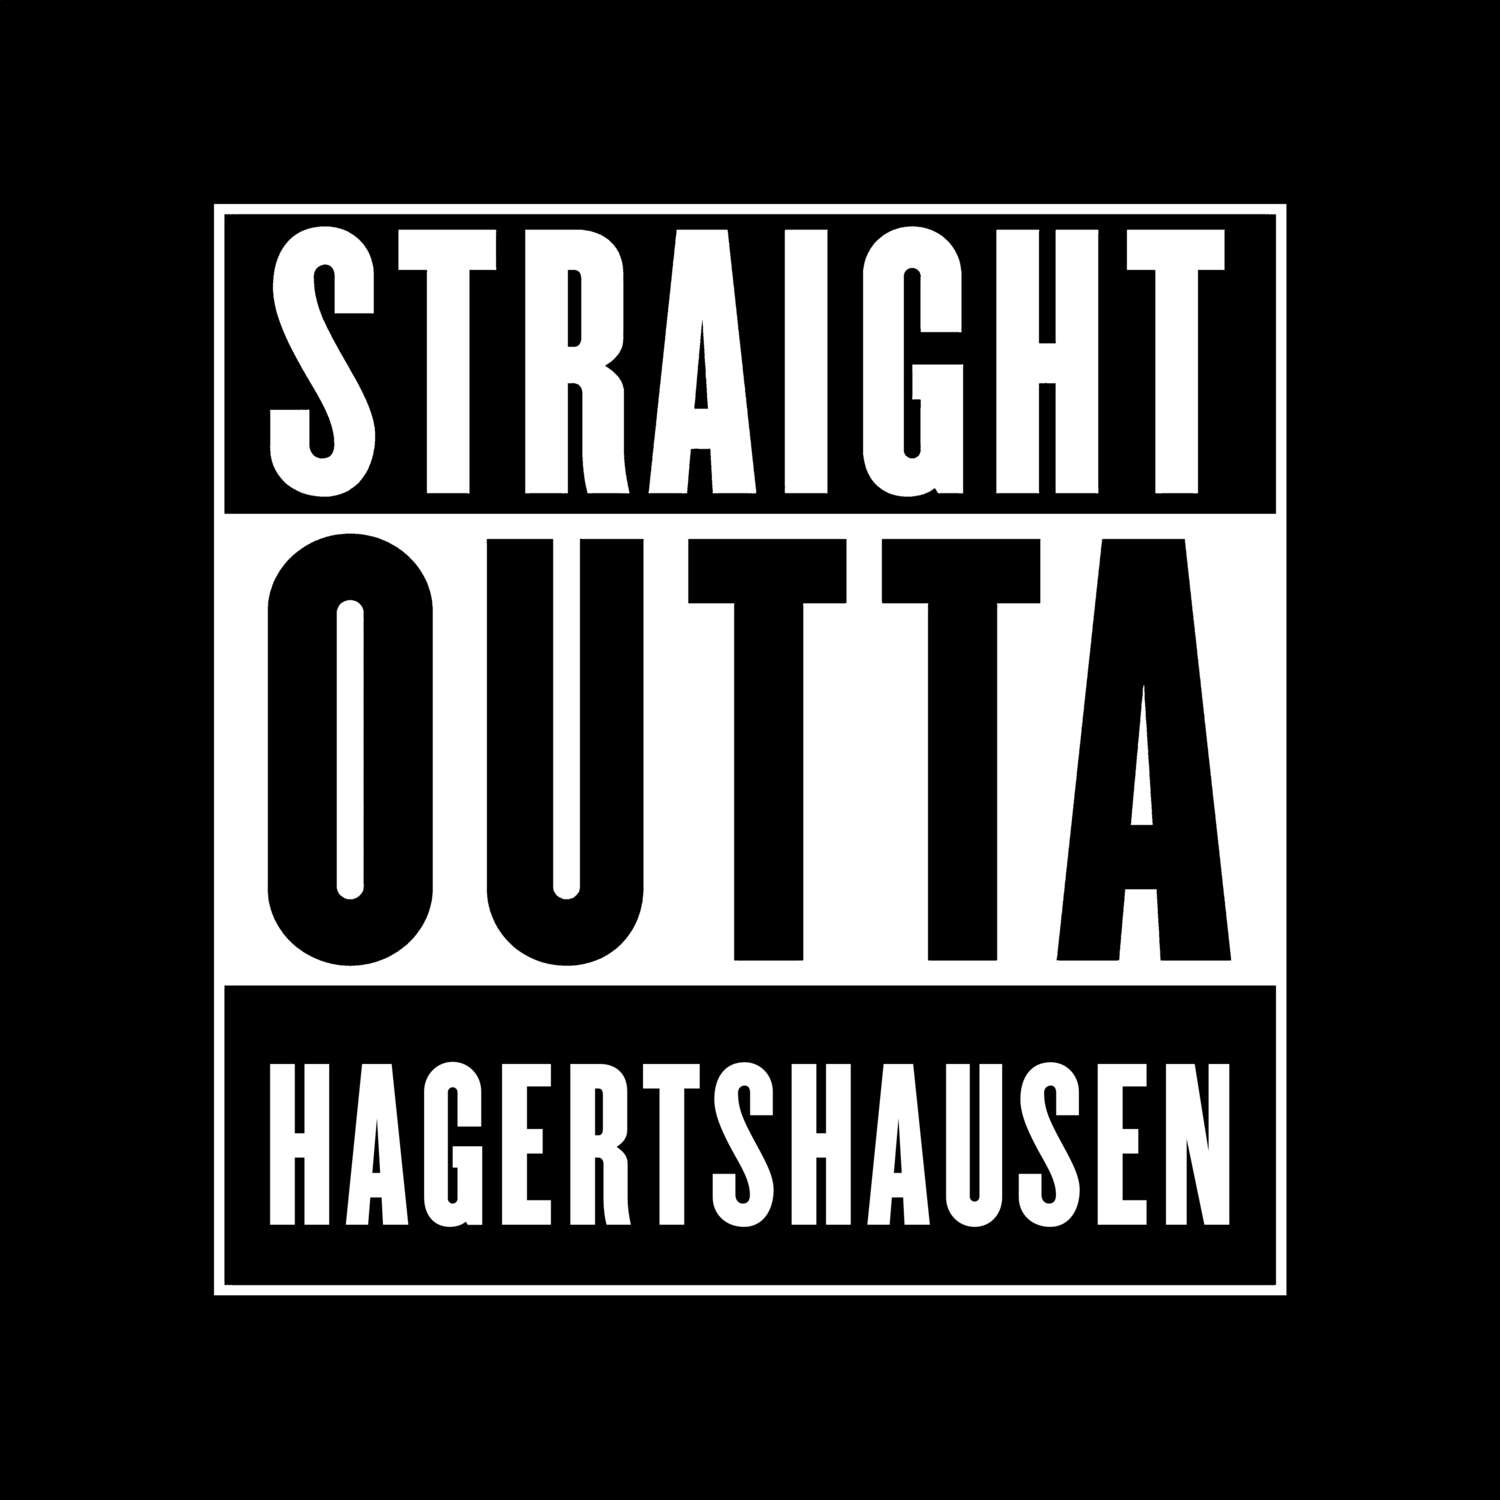 Hagertshausen T-Shirt »Straight Outta«